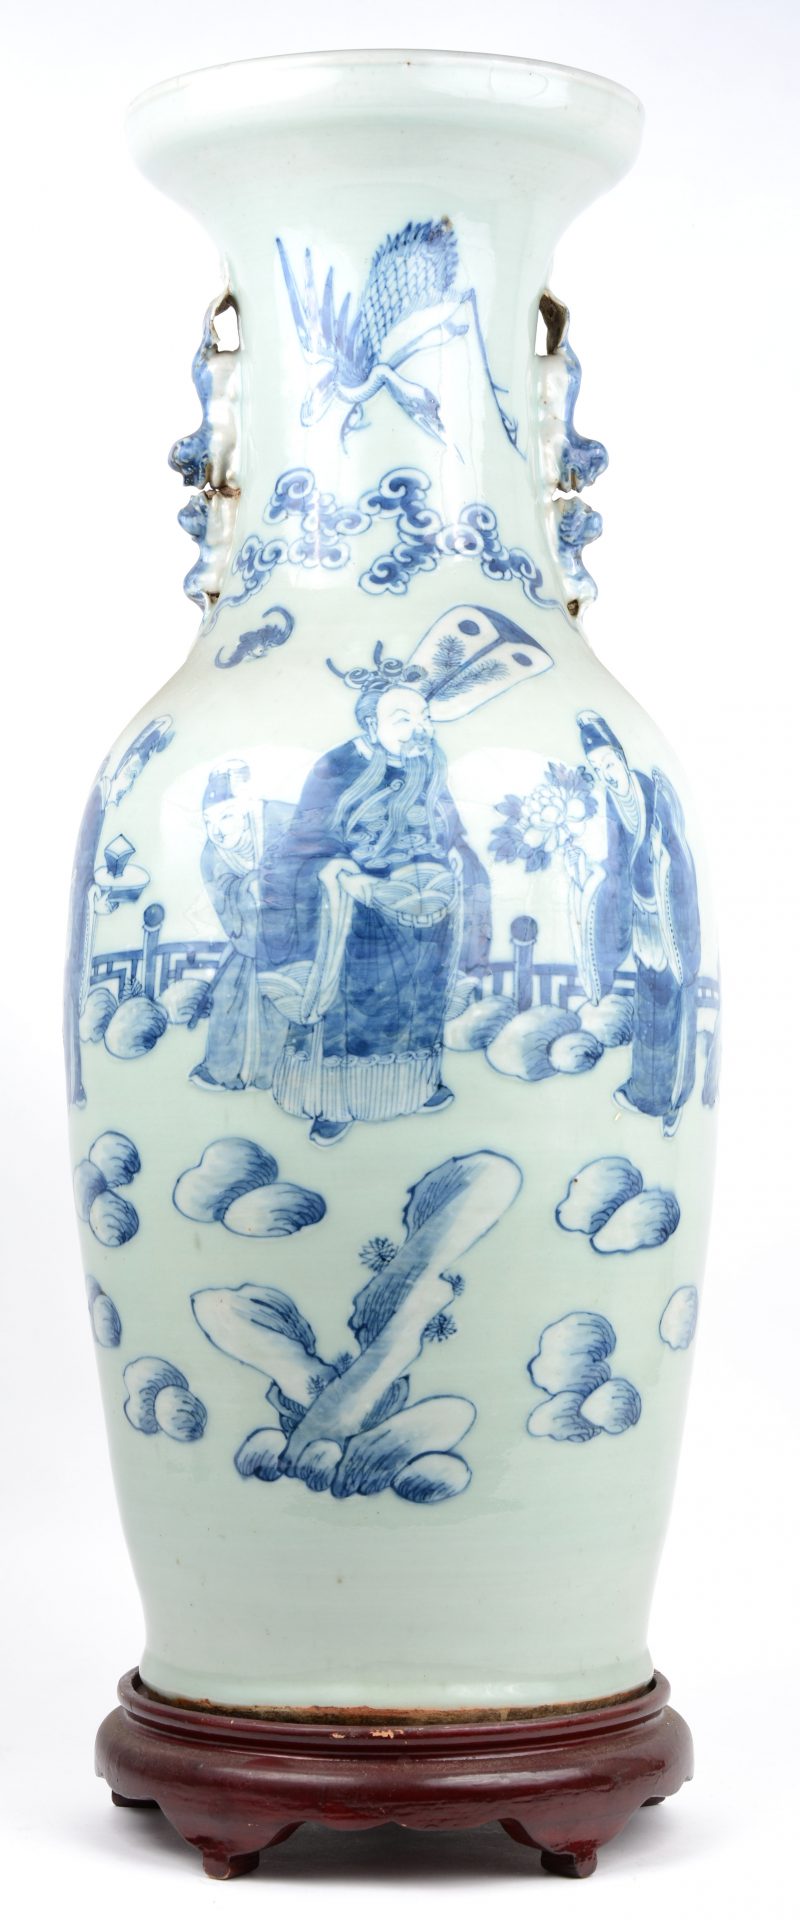 Een balustervaas van Chinees porselein met een blauw decor van wijzen.